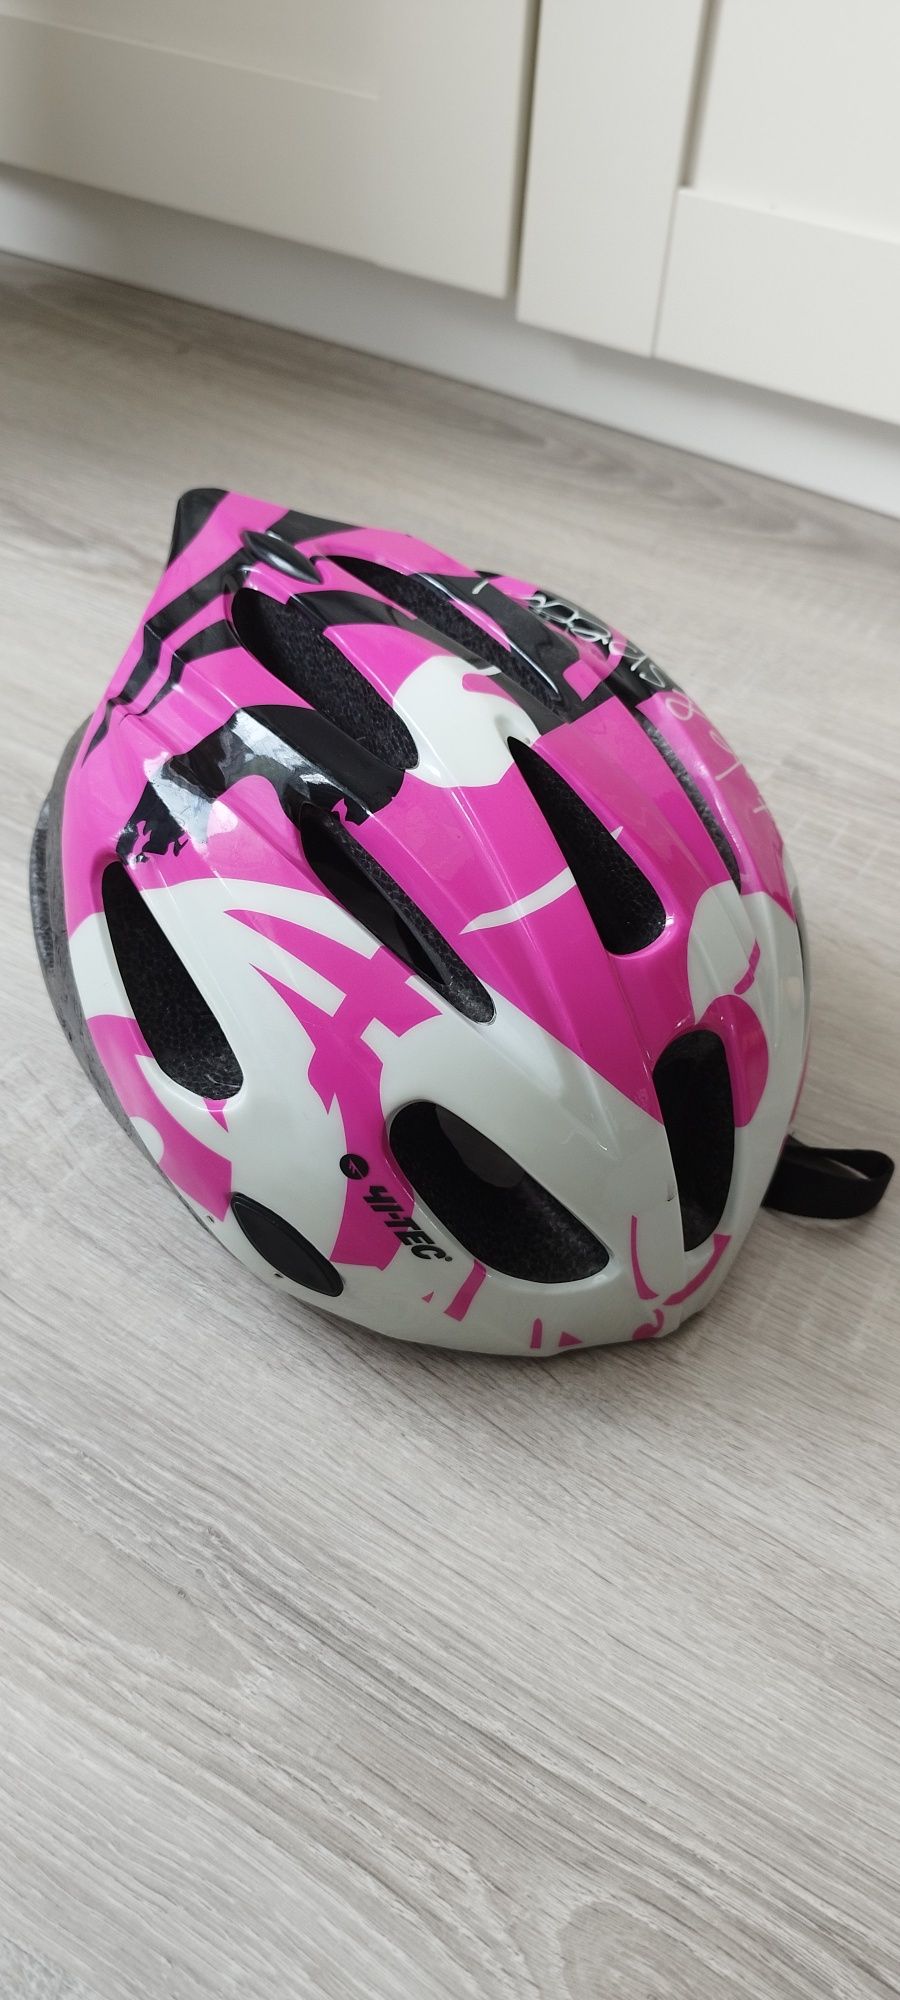 Kask na rower, rolki,  różowy. Rozmiar M 55-58 cm